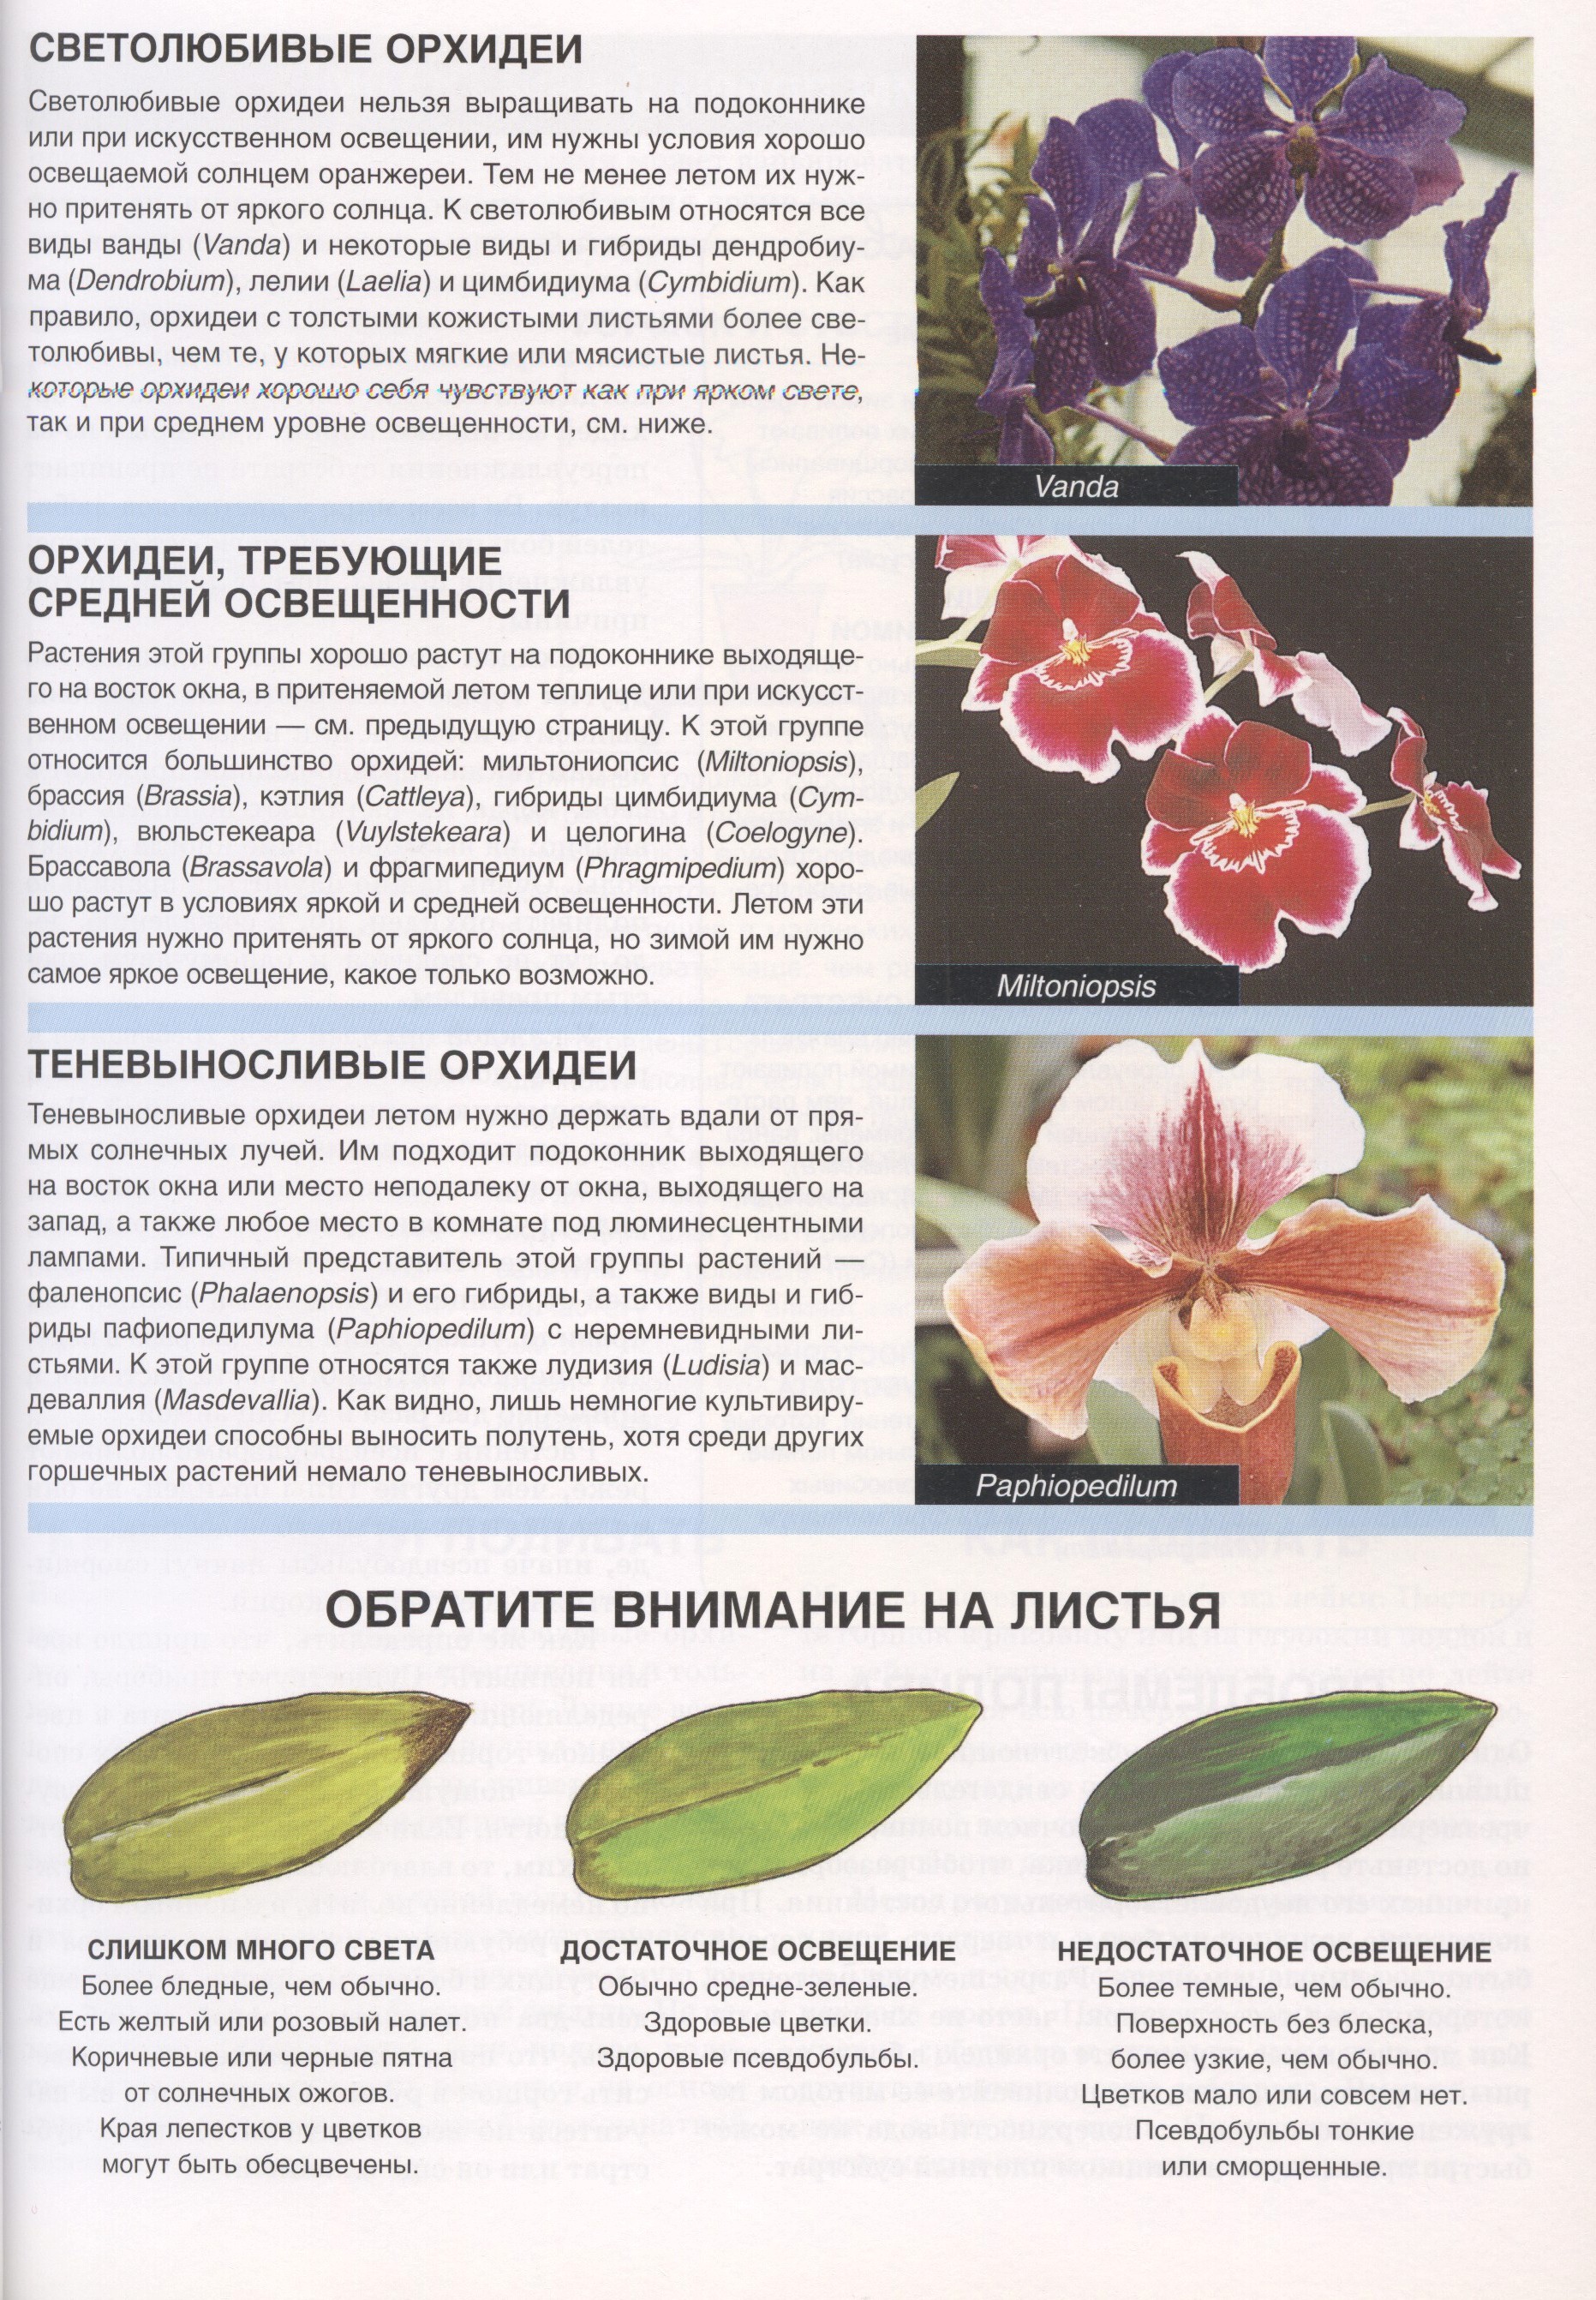 Как отличить орхидею. Сортовые орхидеи фаленопсис. Классификация орхидей фаленопсис. Орхидея фенолепсис описание.